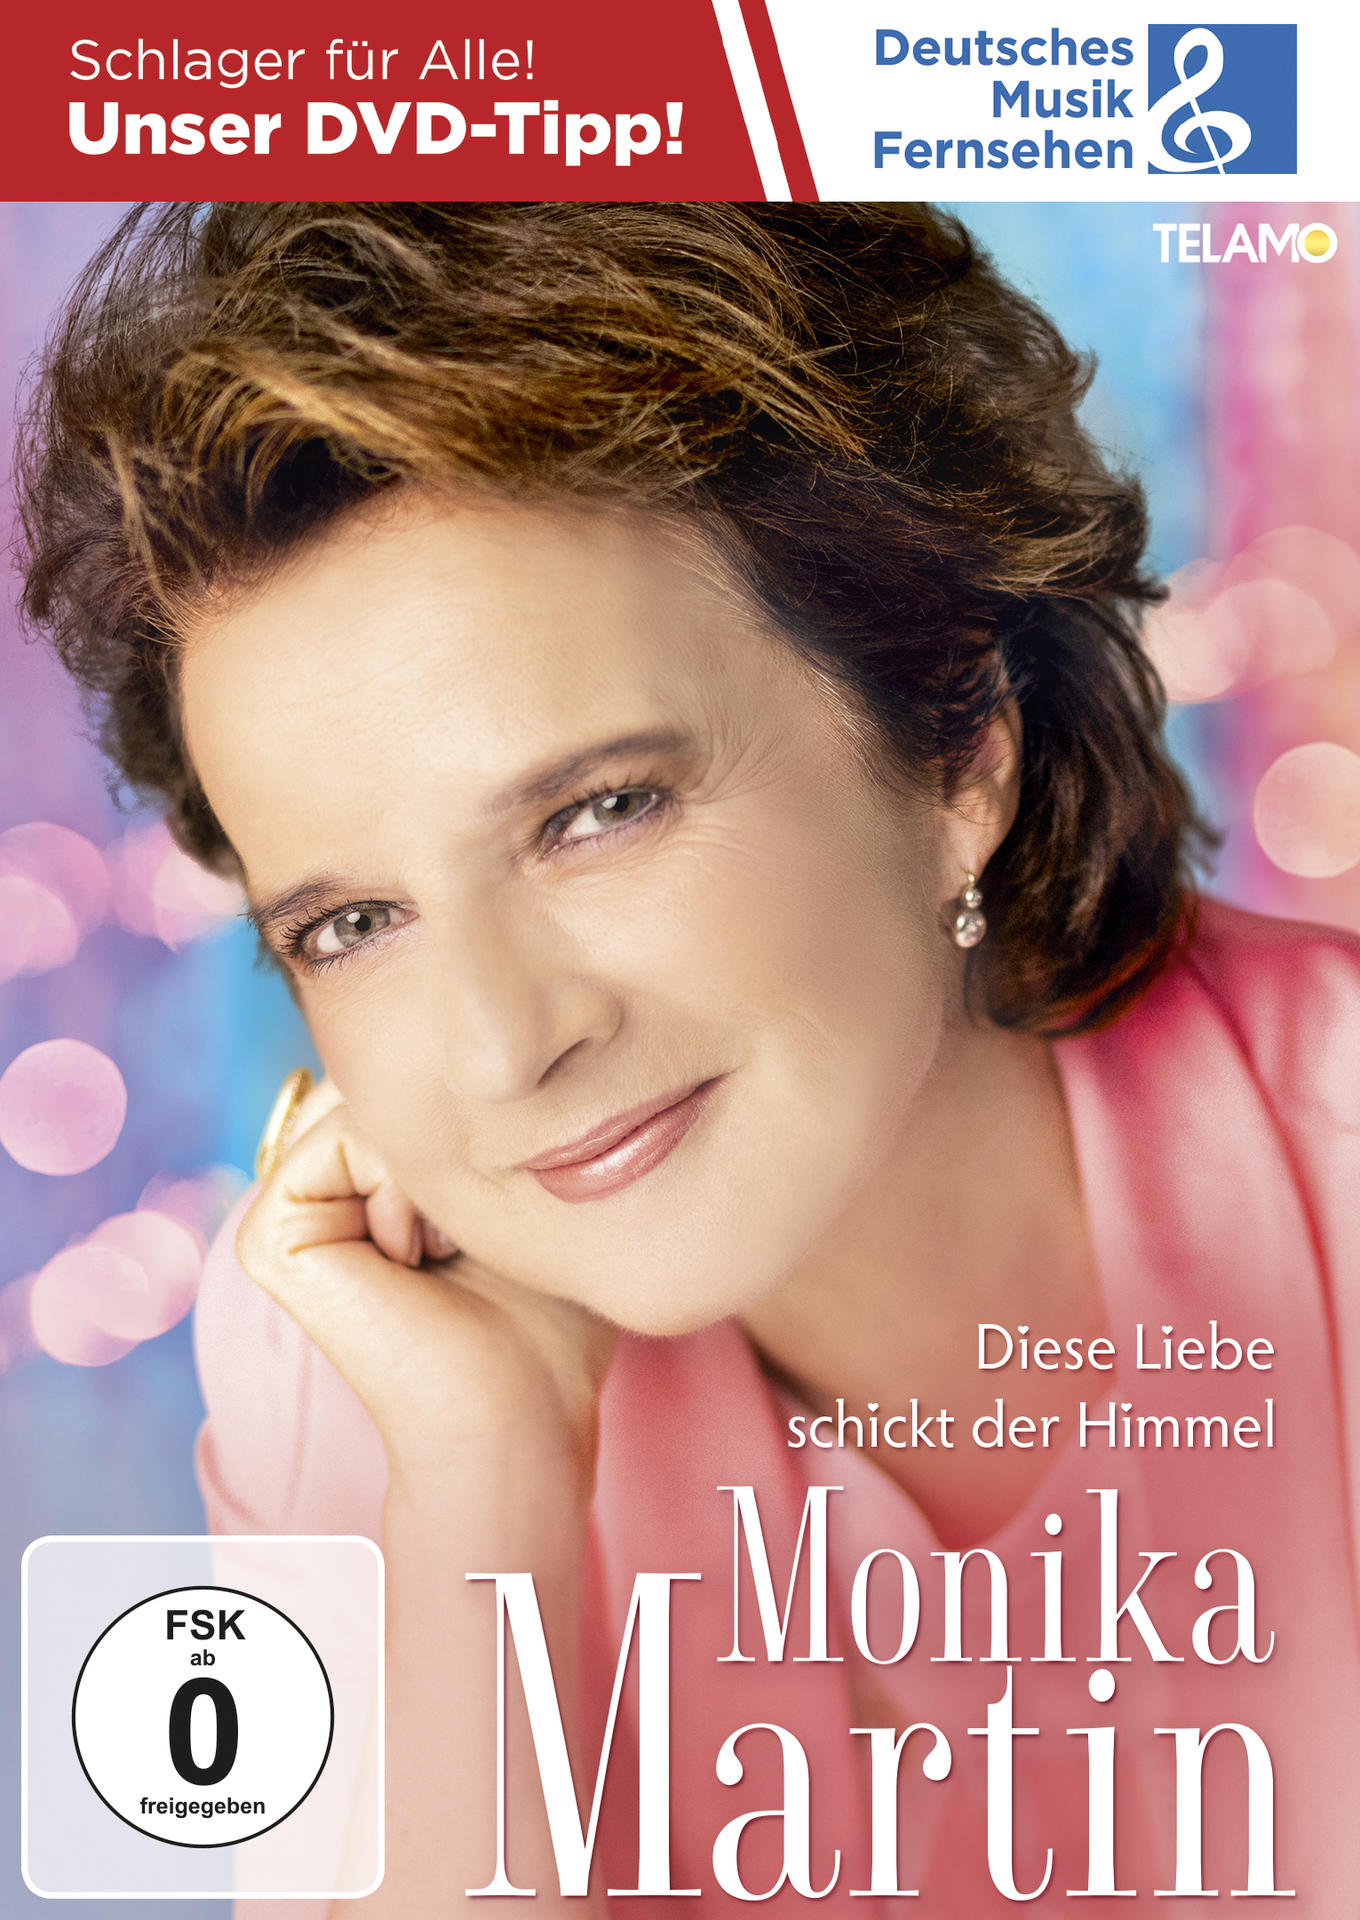 Monika Martin - Liebe der Diese (DVD) schickt Himmel 